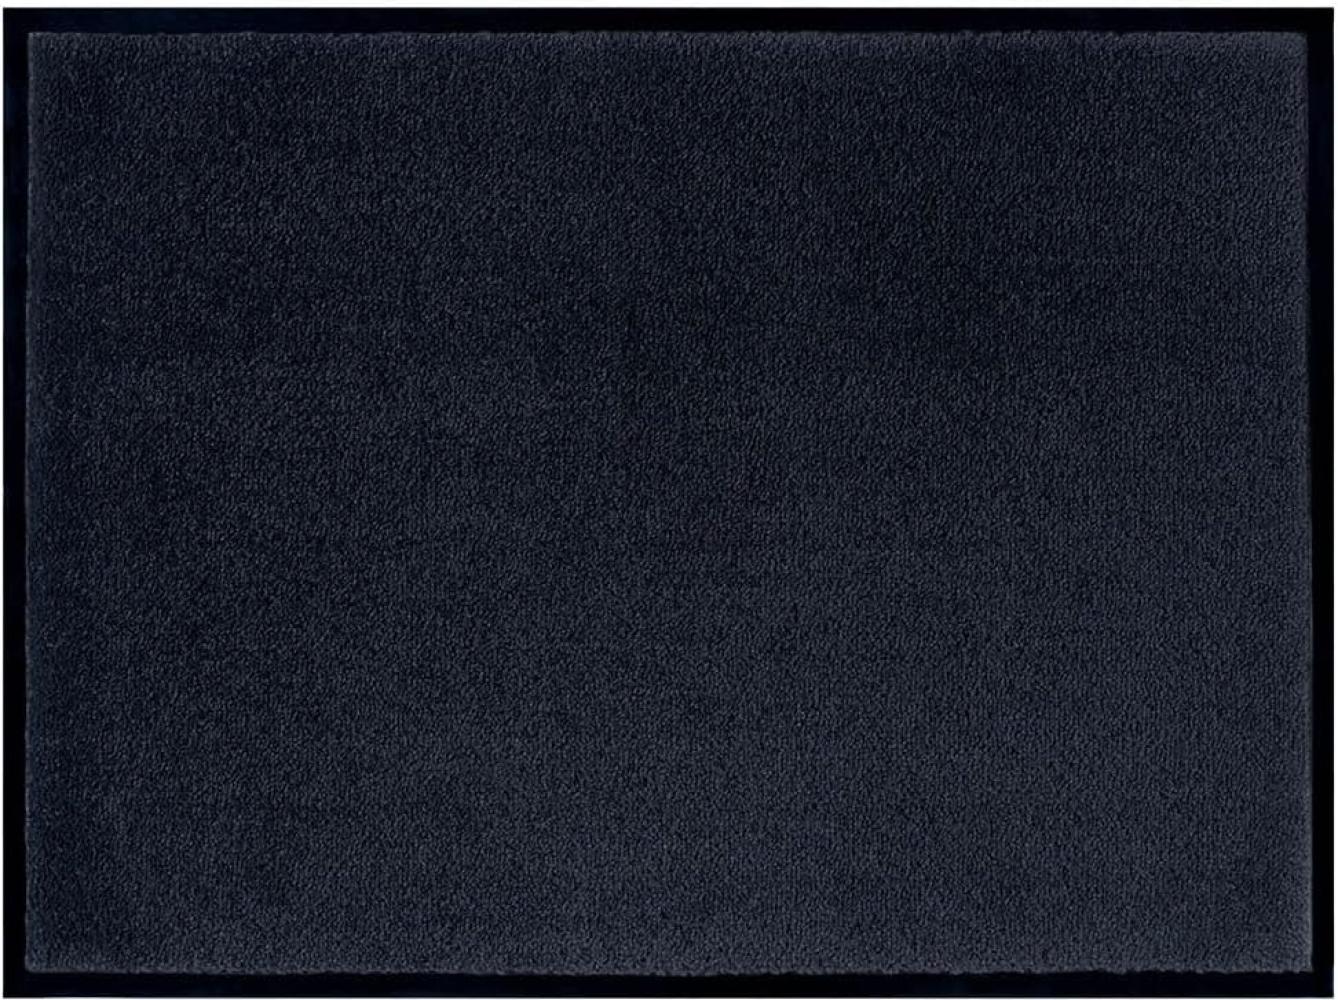 Teppich Boss waschbare In- & Outdoor Fußmatte Uni einfarbig - schwarz - 80x120x0,7cm Bild 1